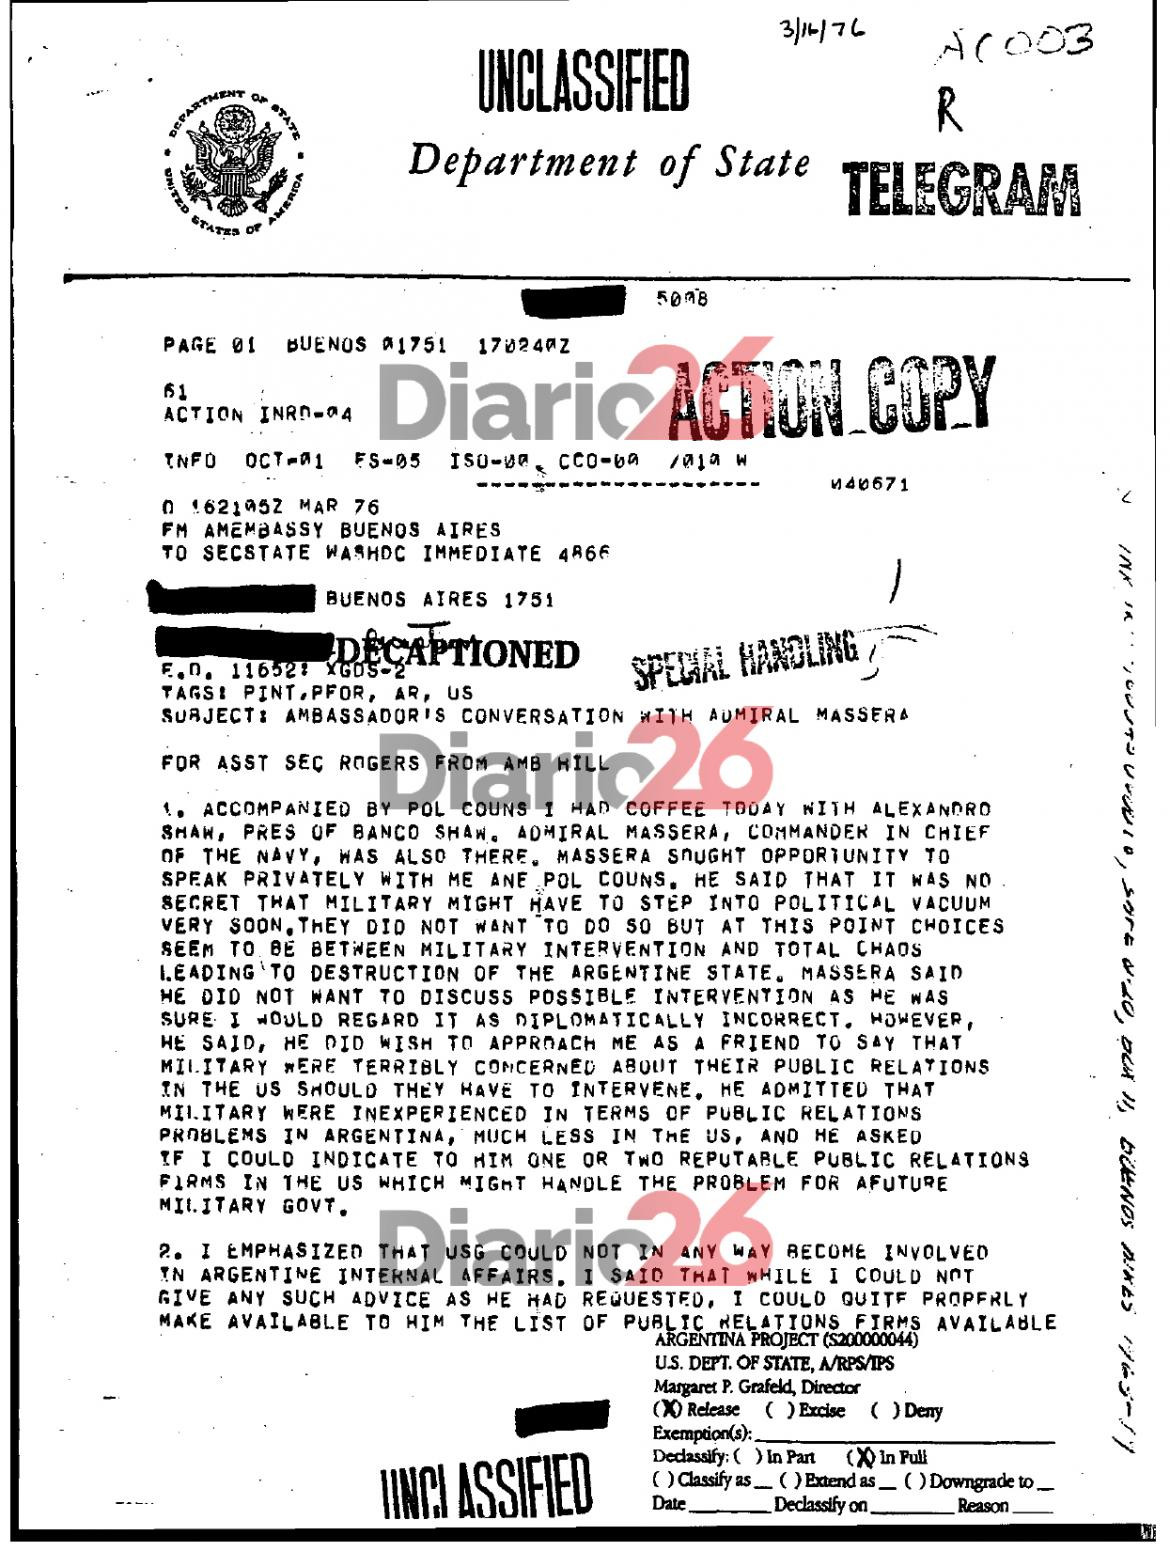 24 de marzo de 1976, golpe militar, dictadura militar en Argentina, documentos de Estados Unidos, Massera